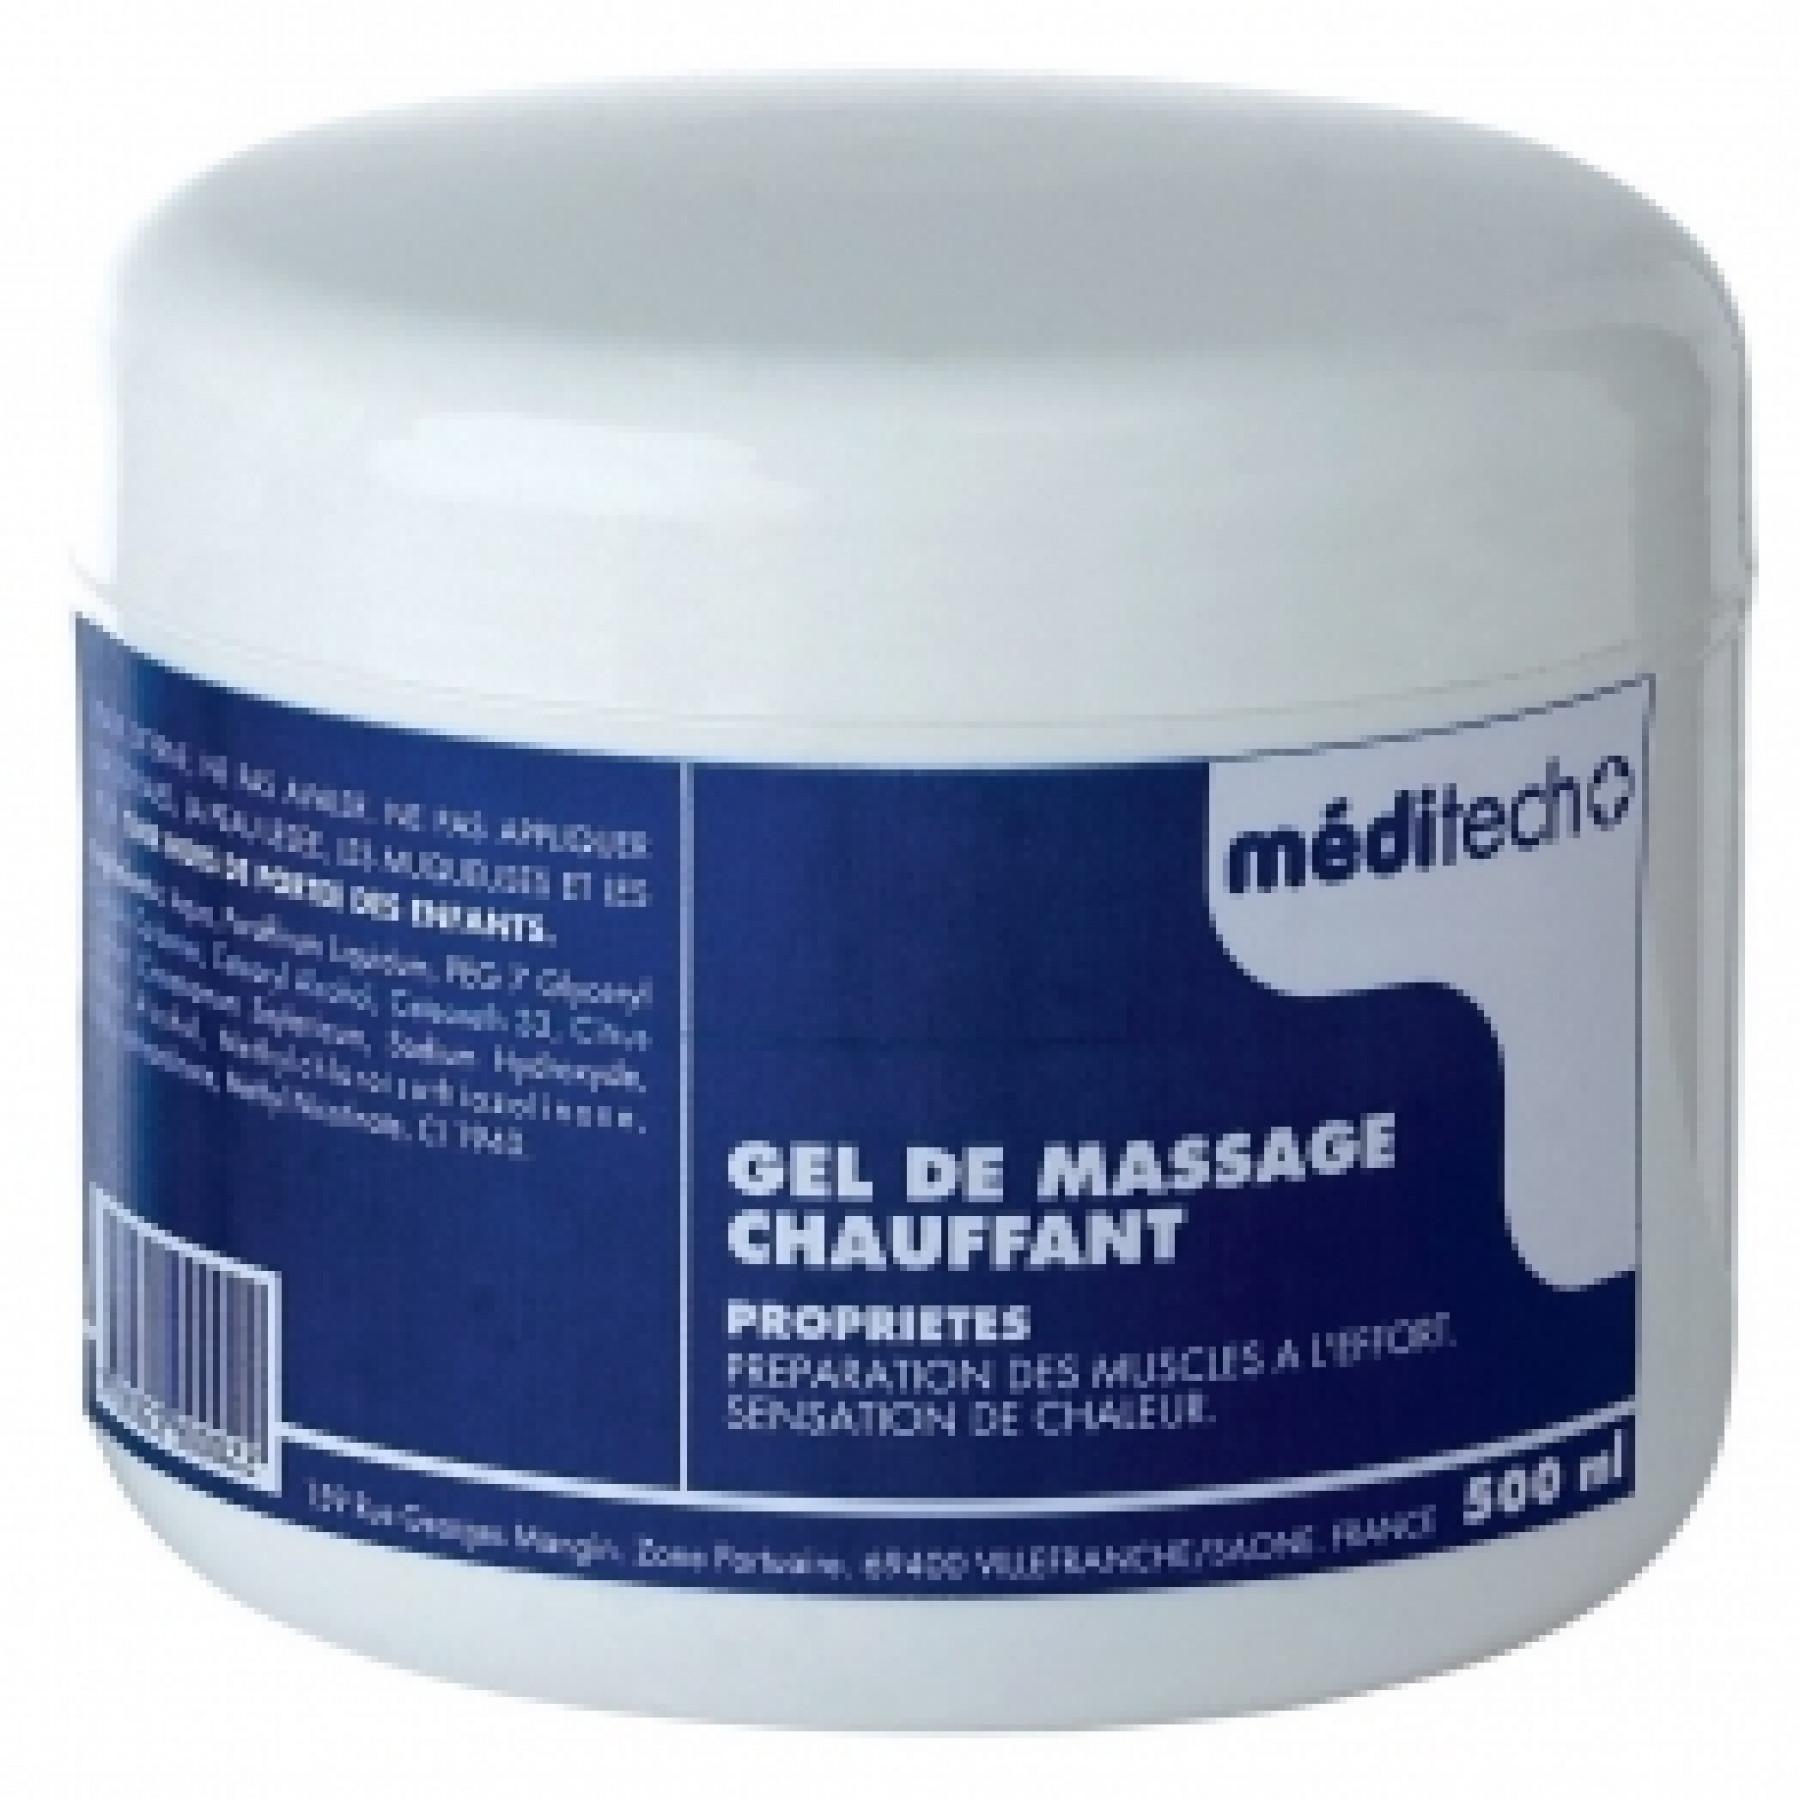 heating massage gel - 500 ml